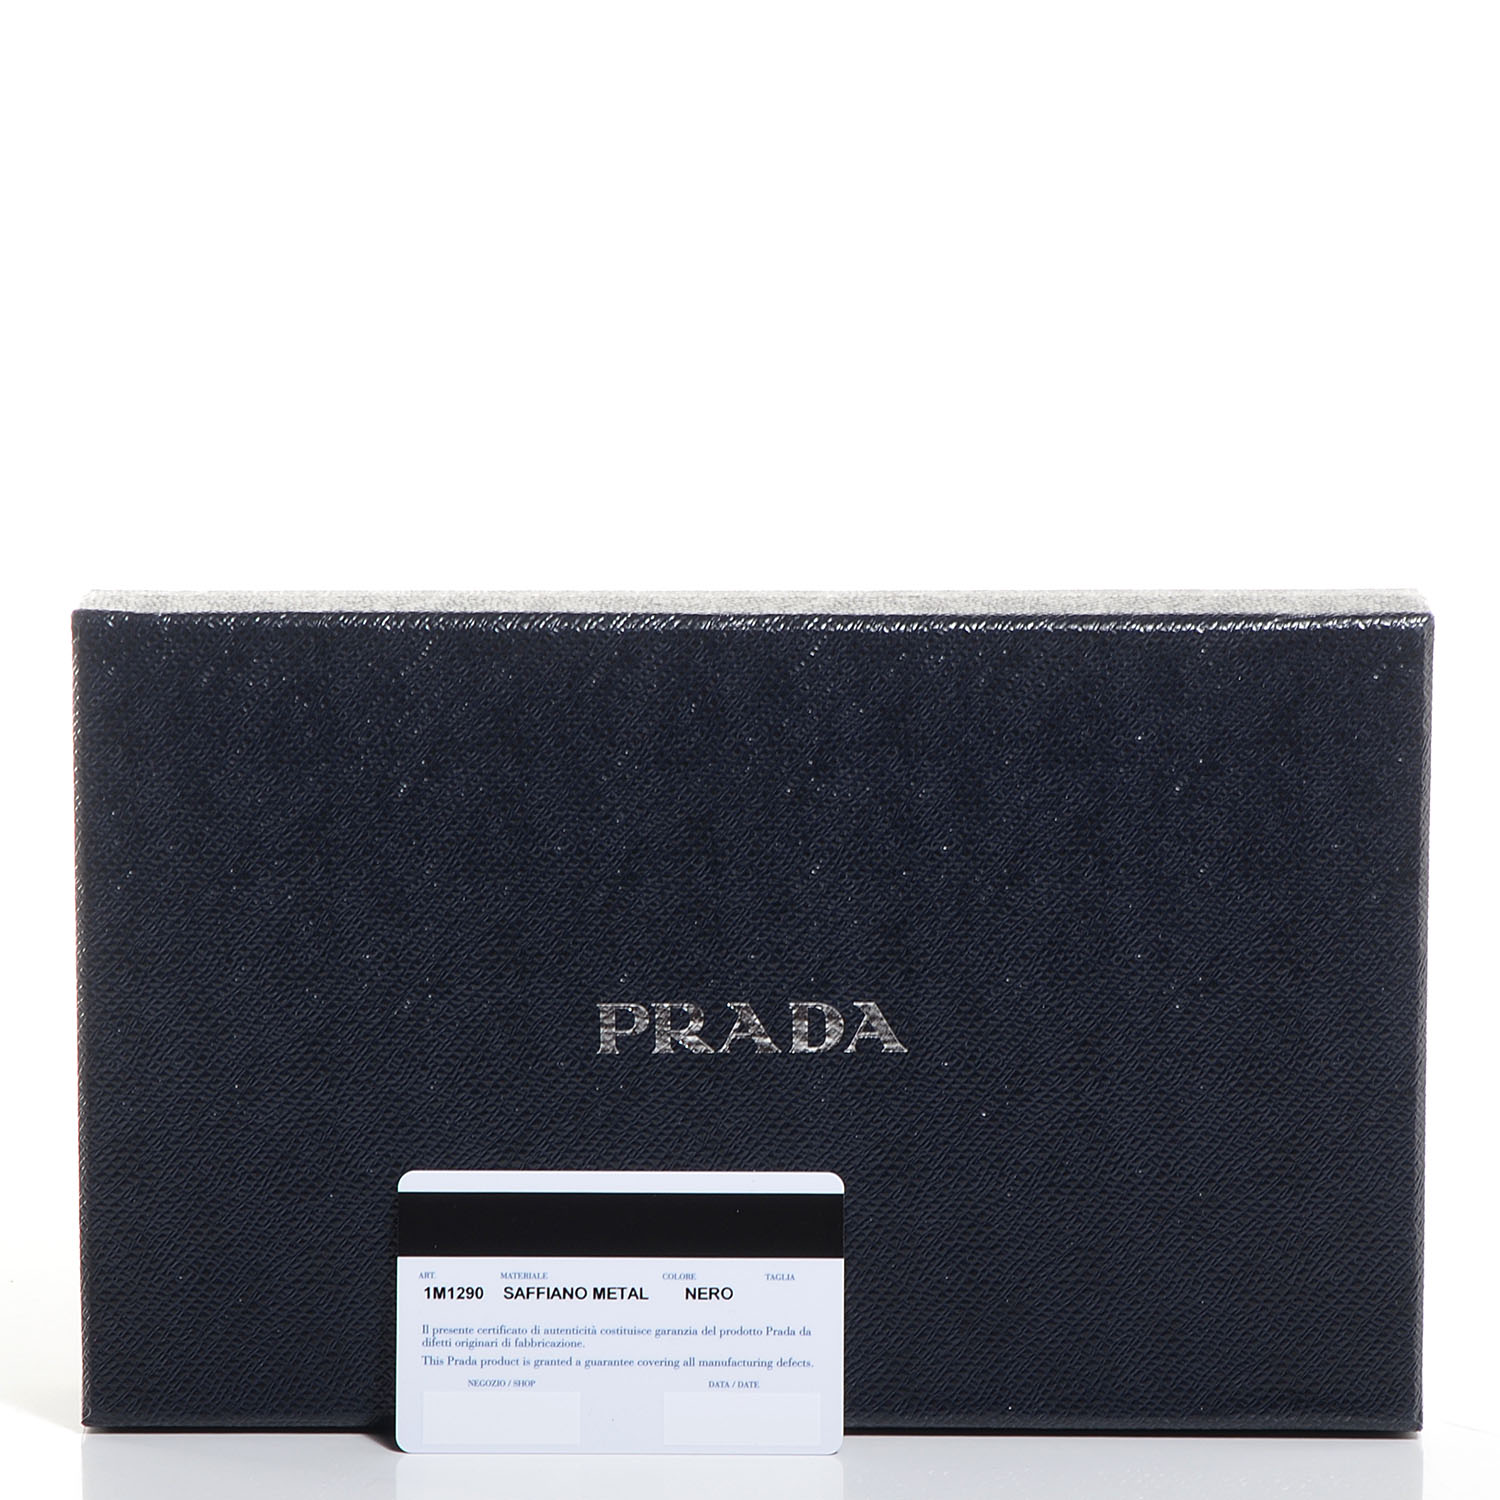 PRADA Saffiano Metal Oro Chain Wallet Nero Black 90073